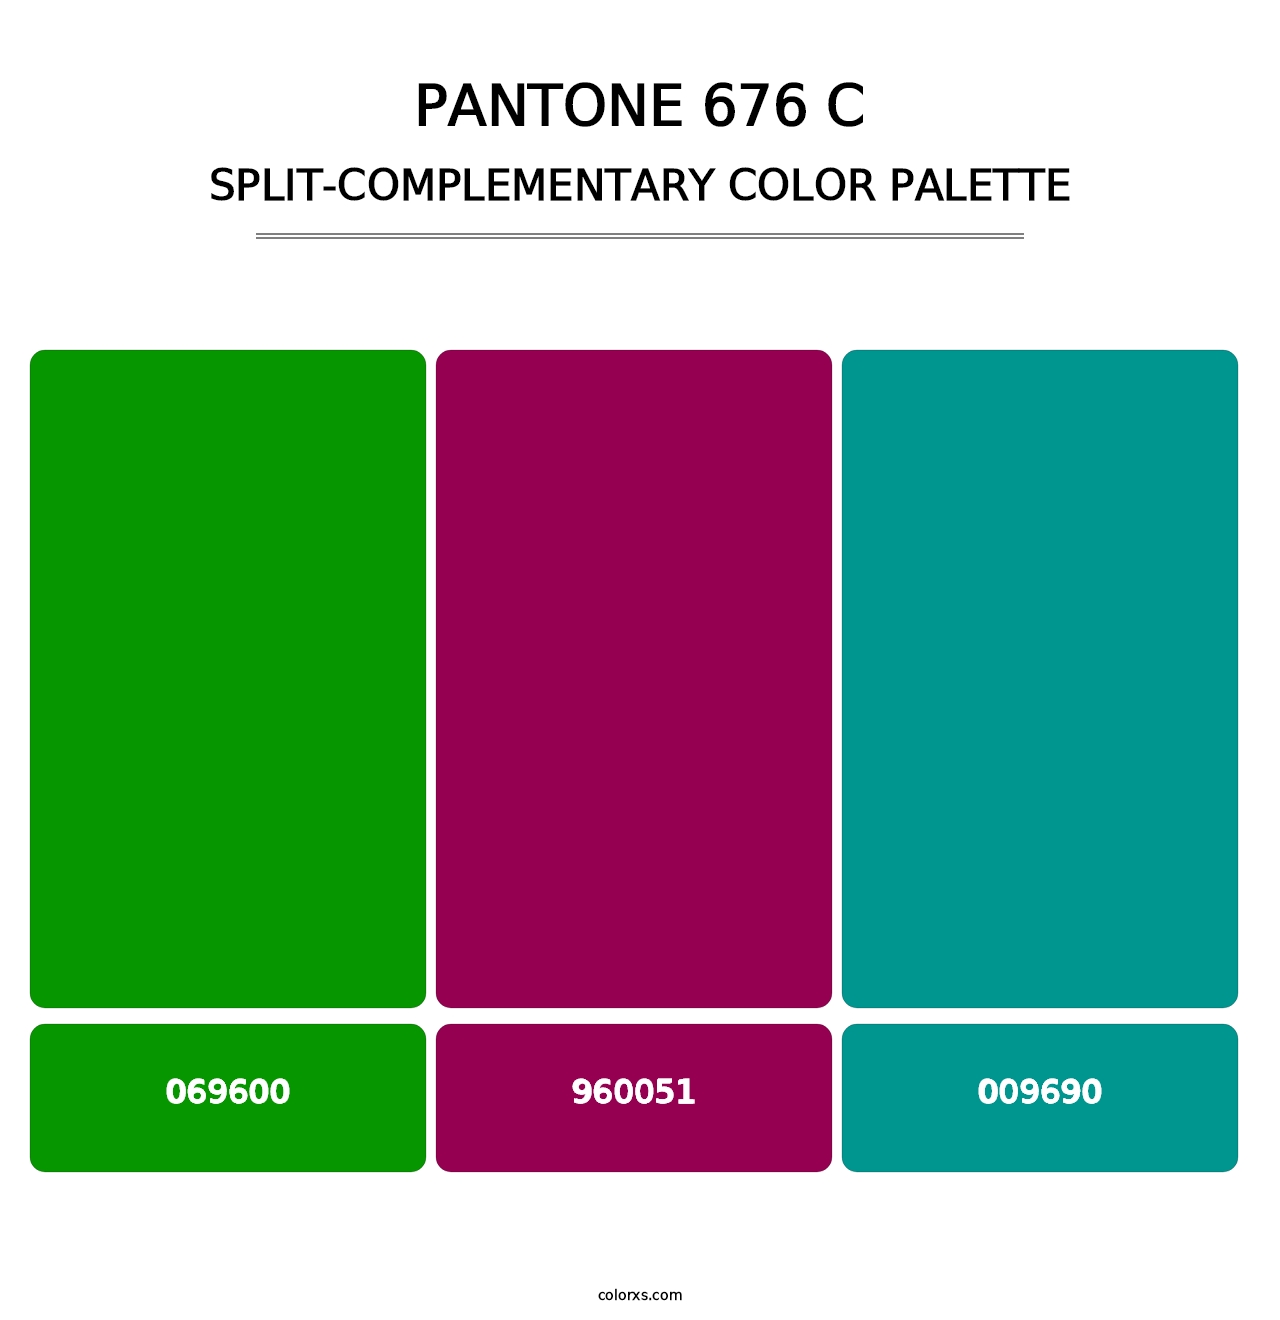 PANTONE 676 C - Split-Complementary Color Palette